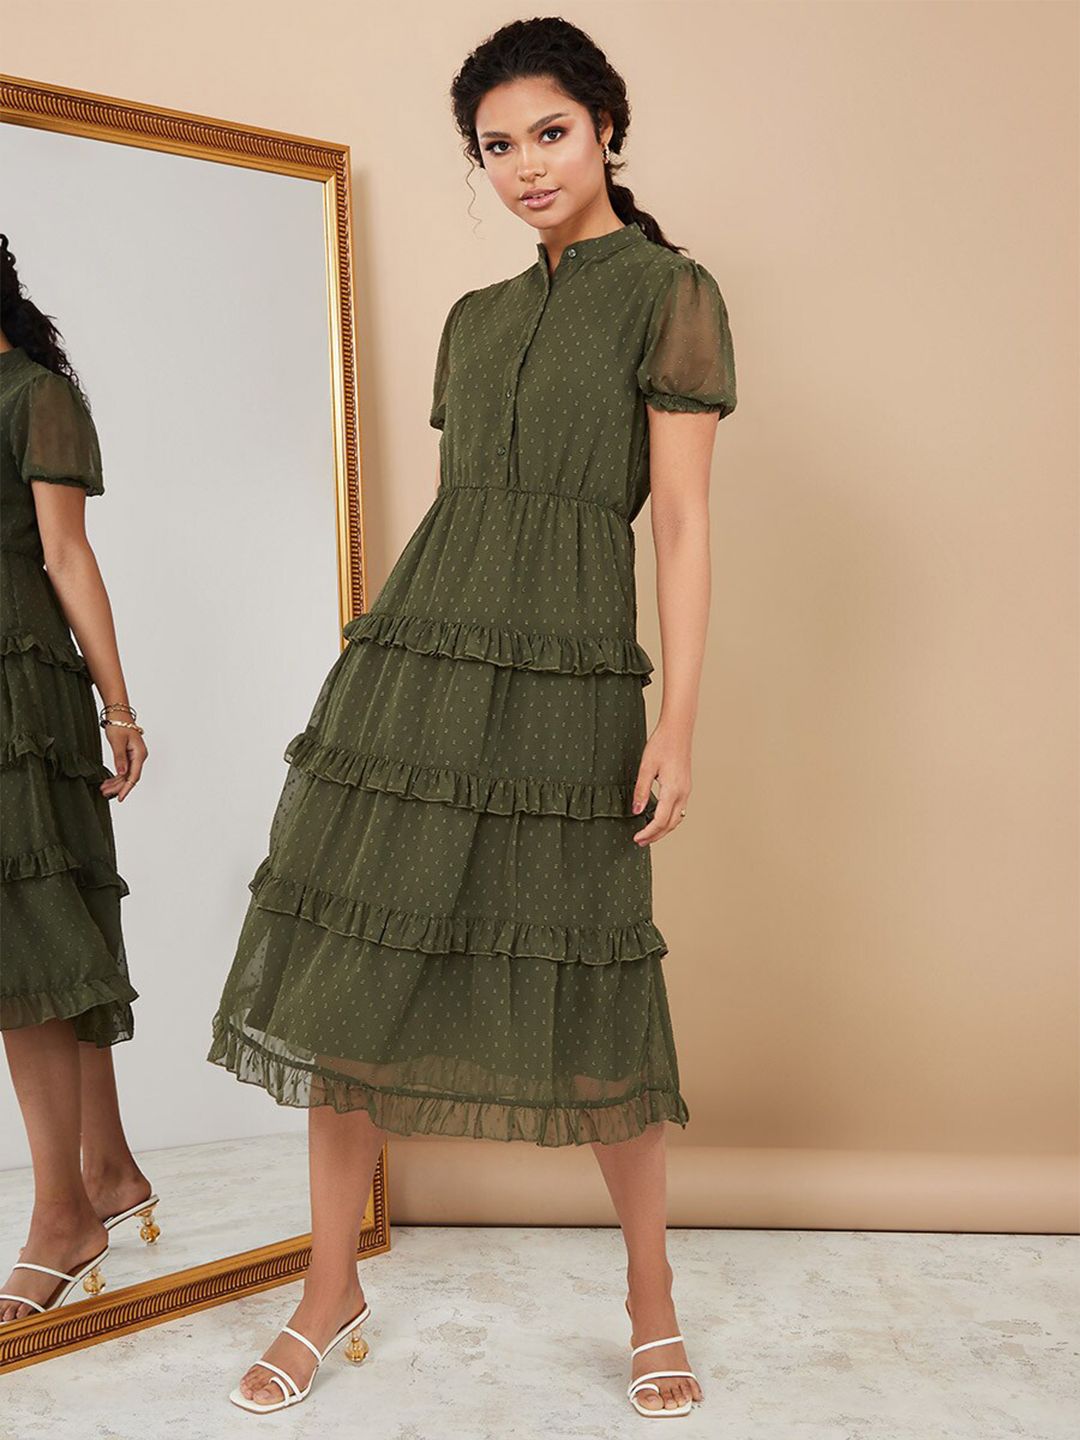 Styli Green Peplum Dress Price in India